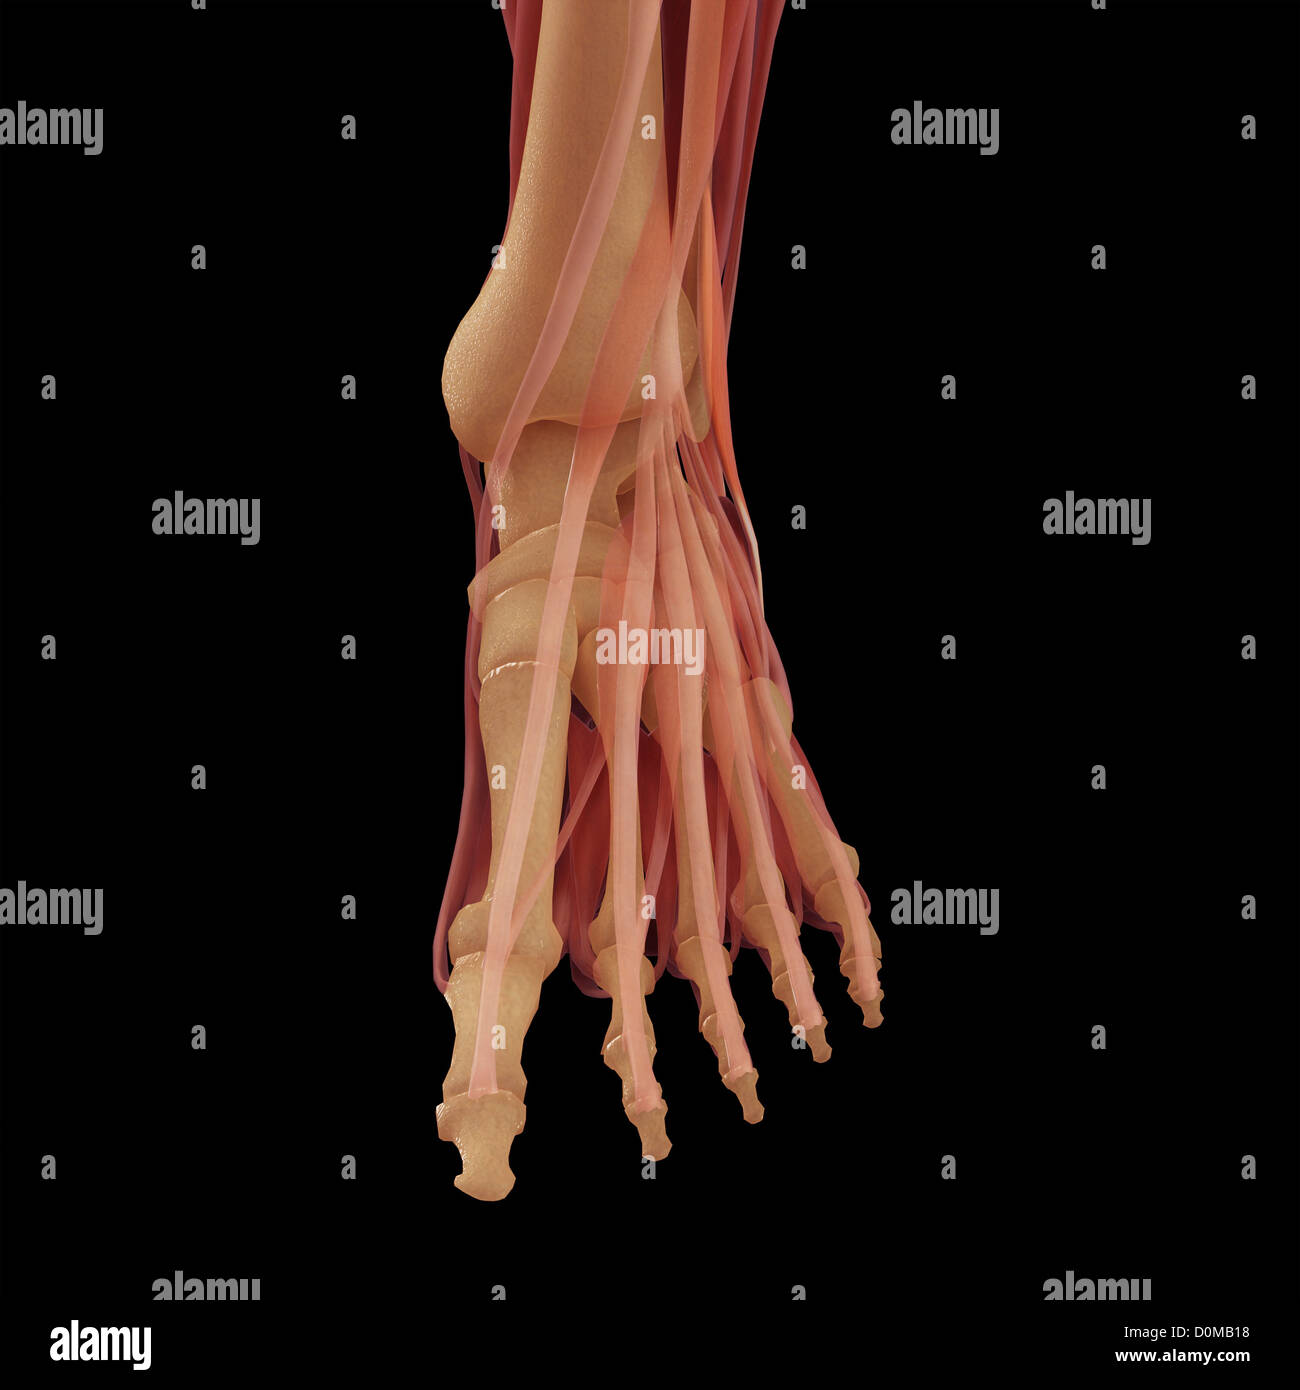 Un modello umano che mostra i muscoli del piede. Foto Stock